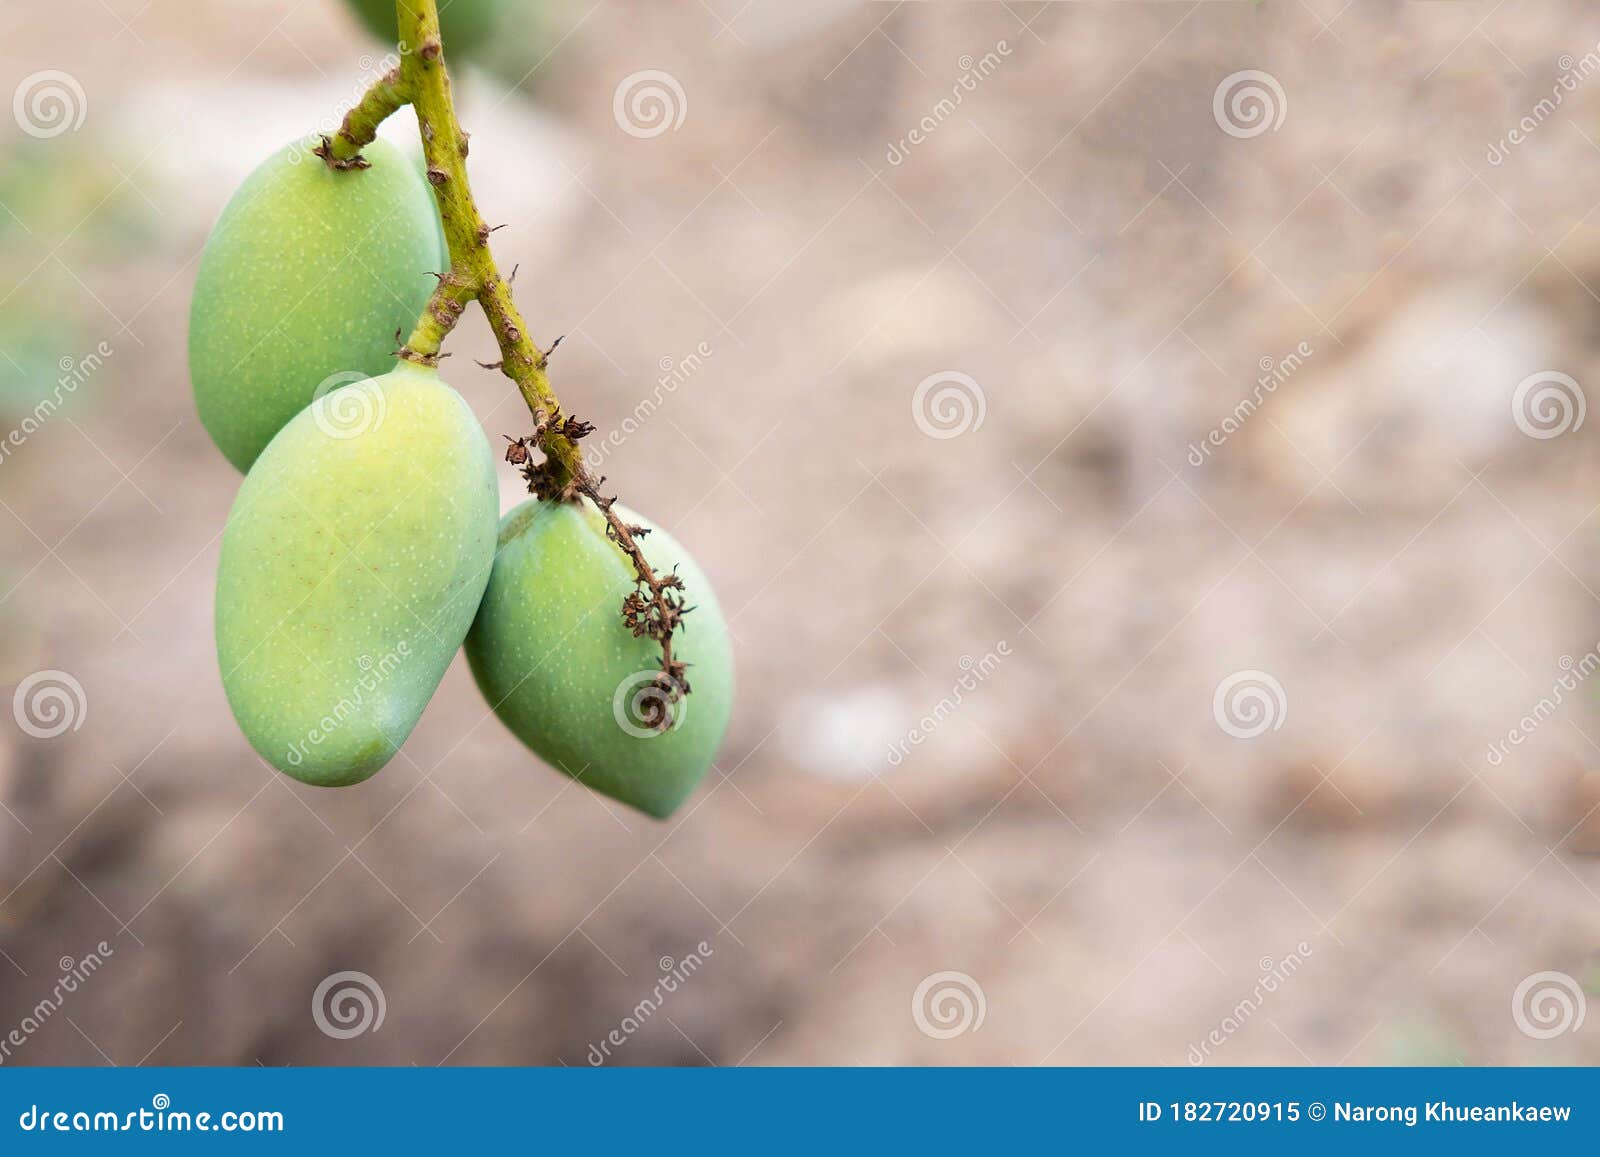 .Fresh Mango Fruit From Mango Tree Stock Image - Image of agriculture East Indian Mango Tree For Sale Florida